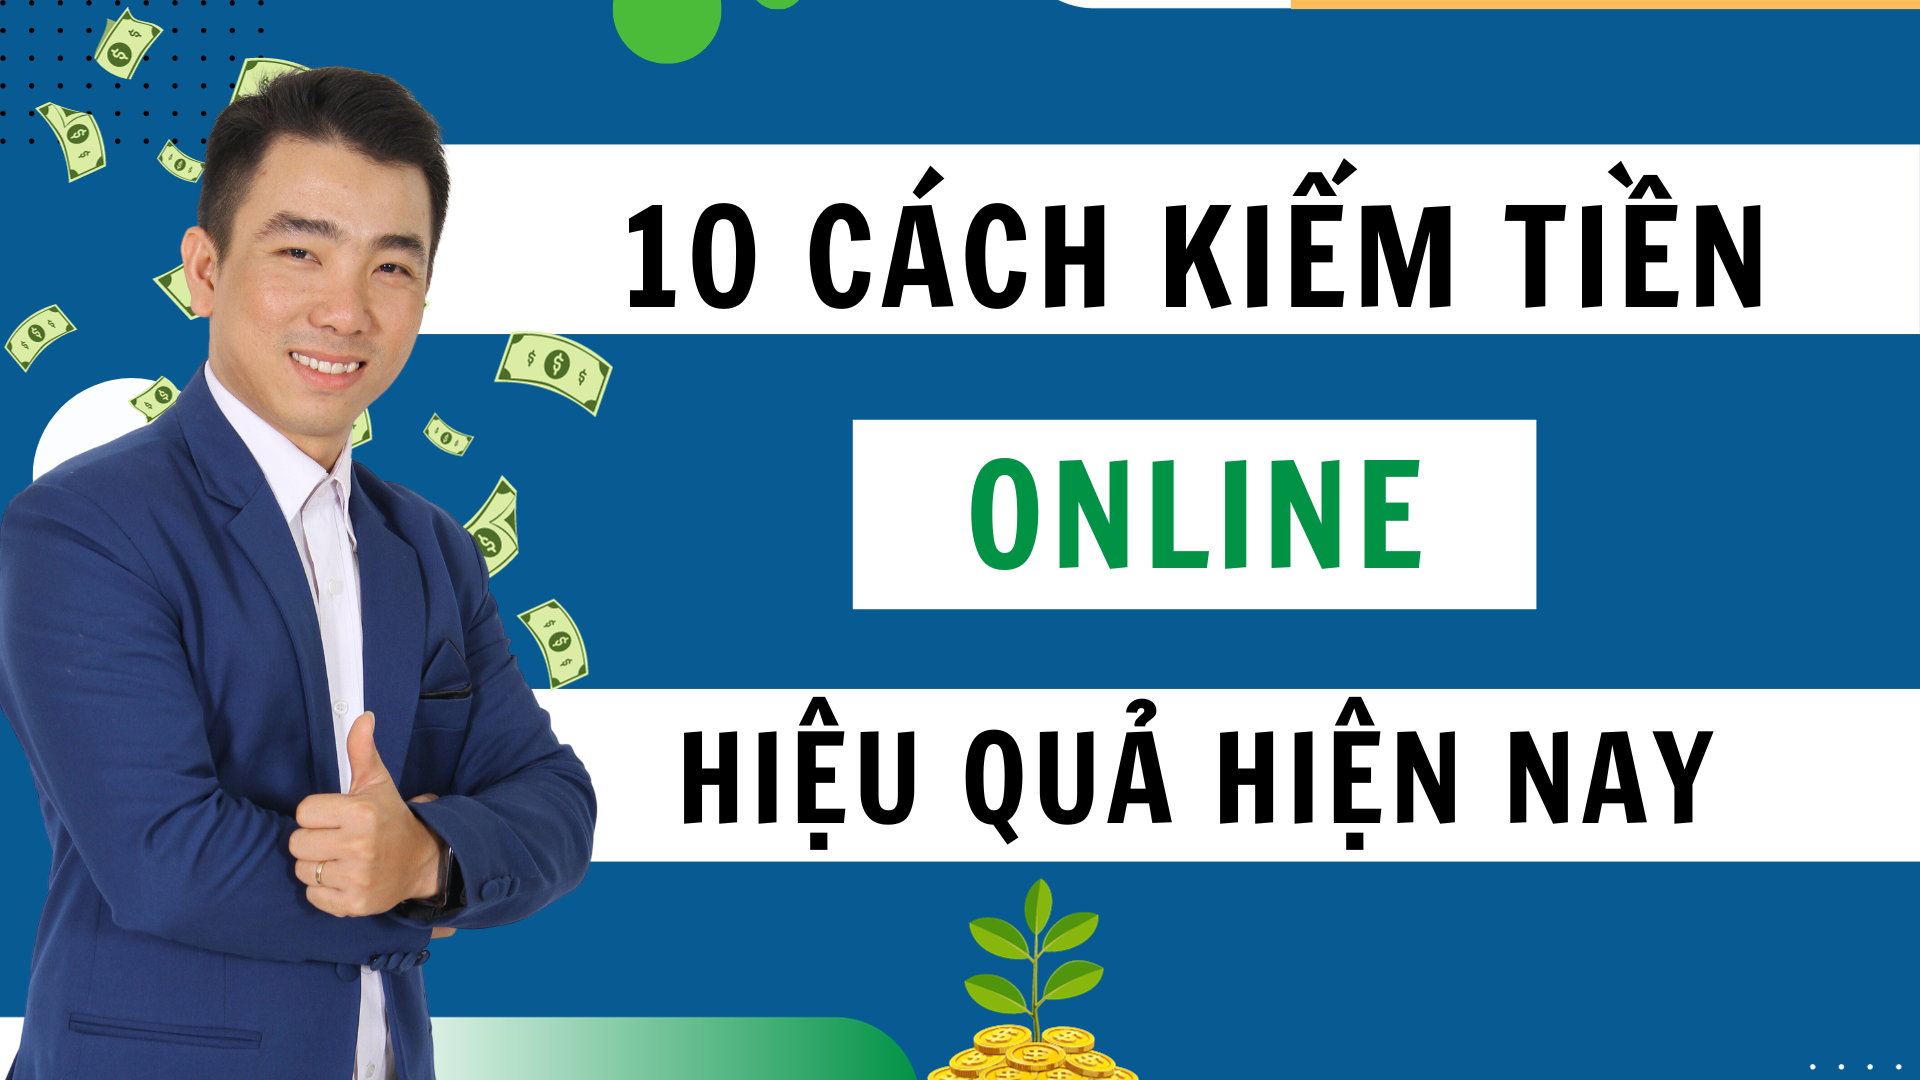 Top 10 cách kiếm tiền online hiệu quả nhất hiện nay